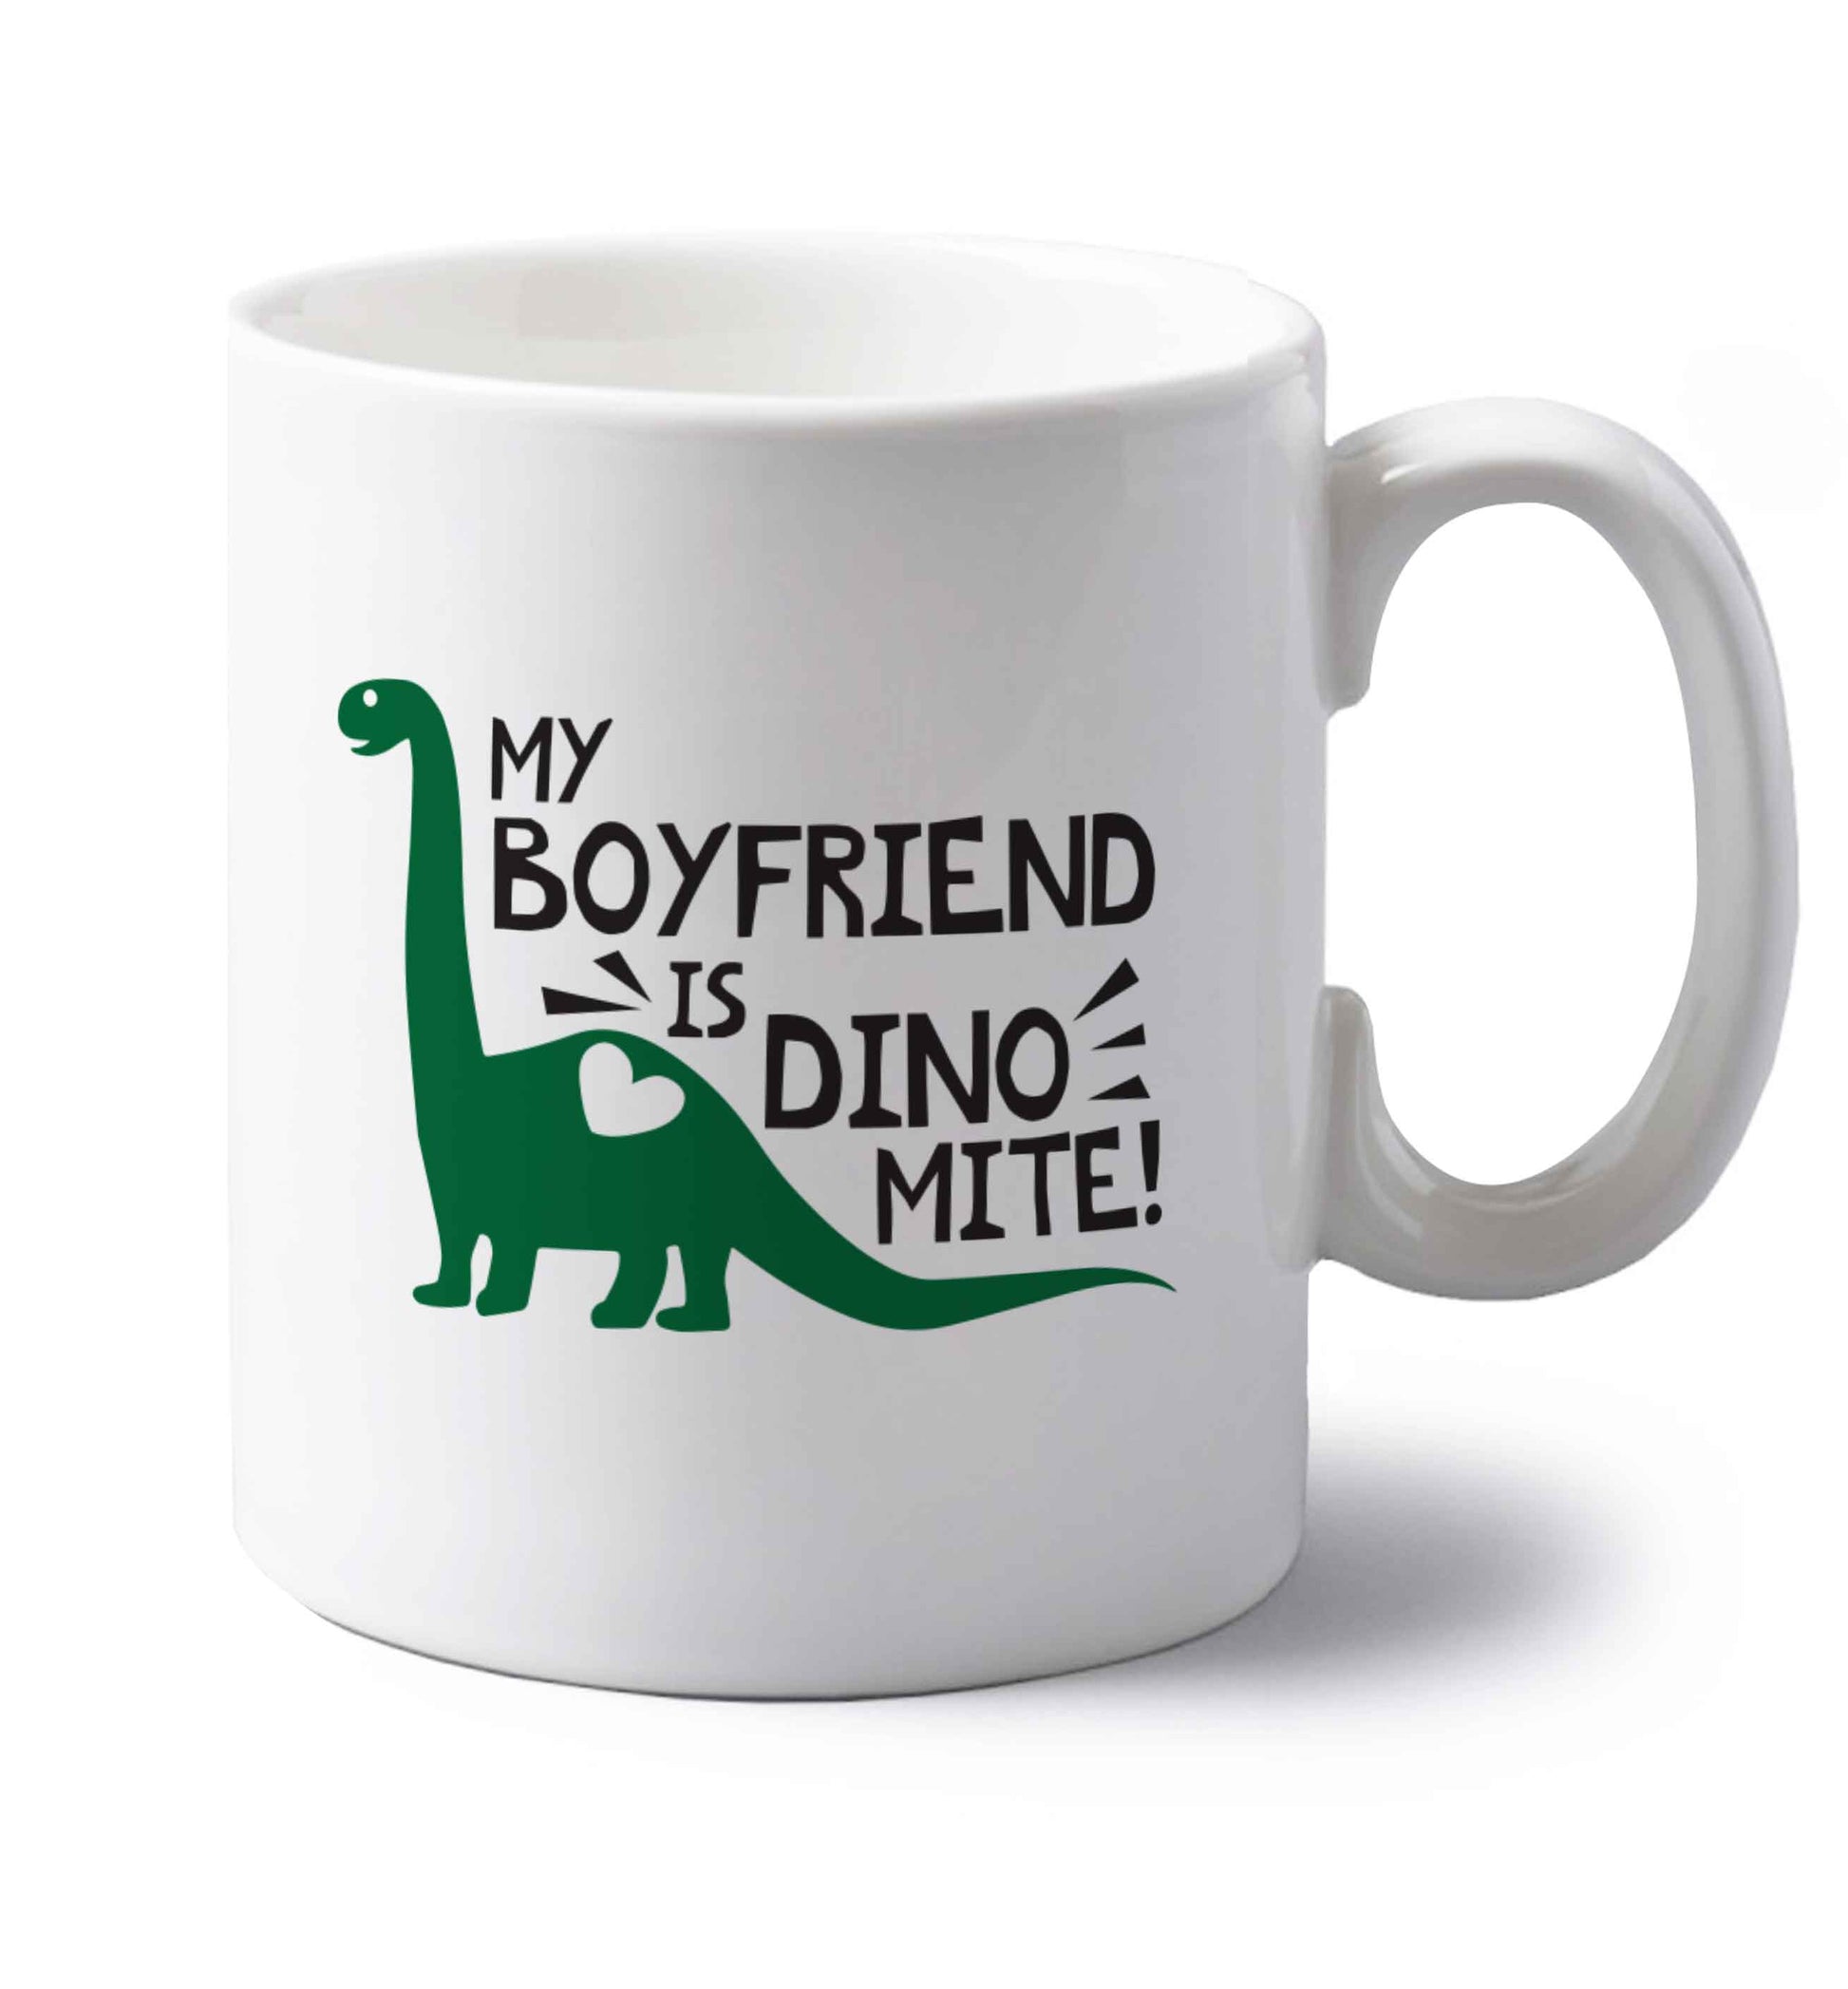 My boyfriend is dinomite! left handed white ceramic mug 